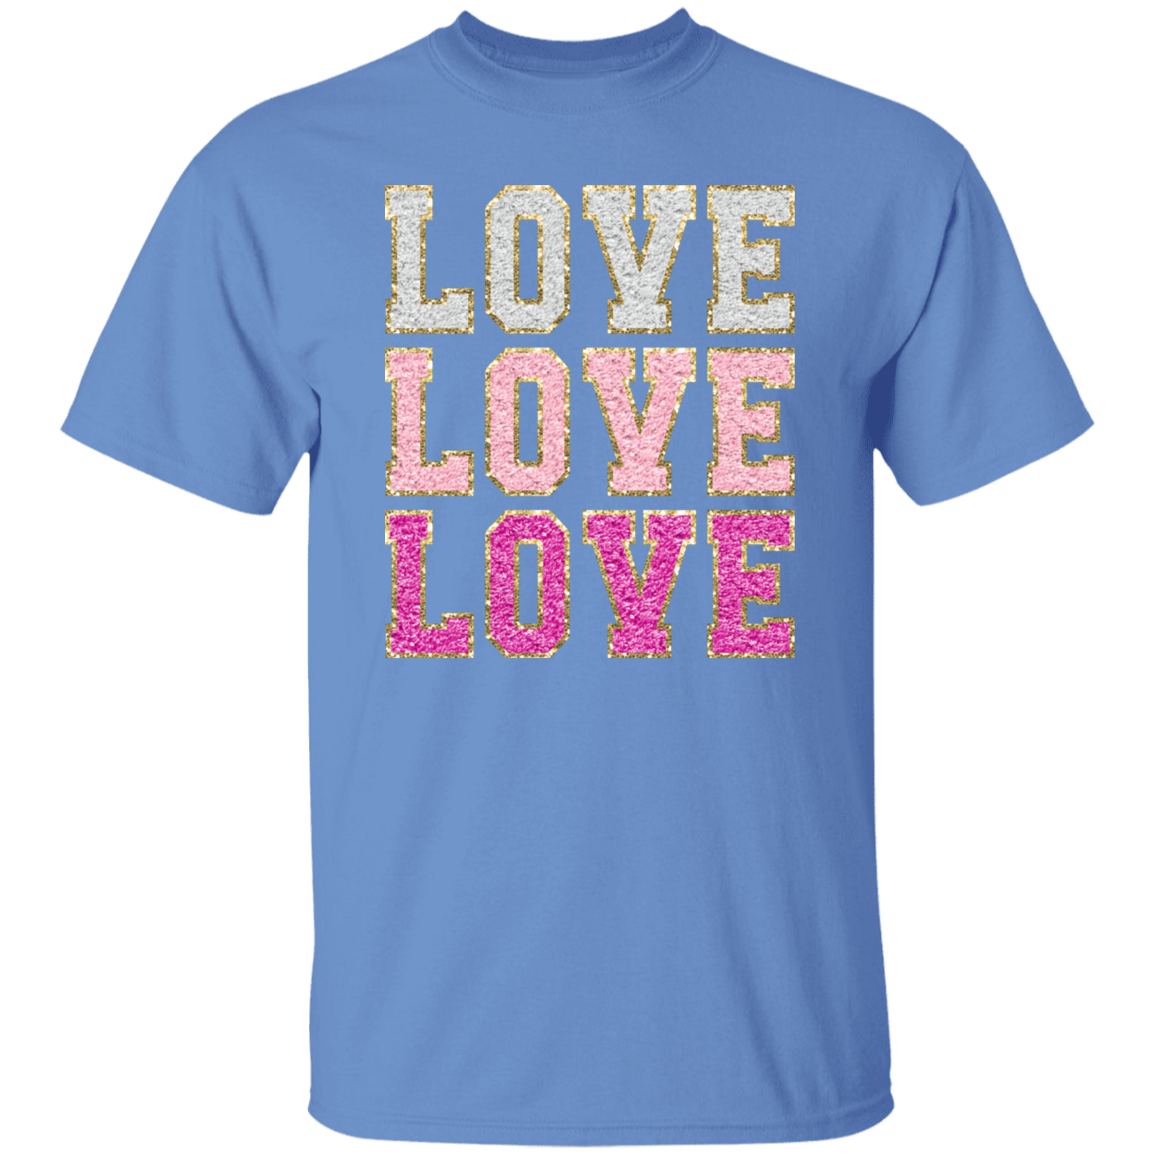 Love Love Love T-Shirt